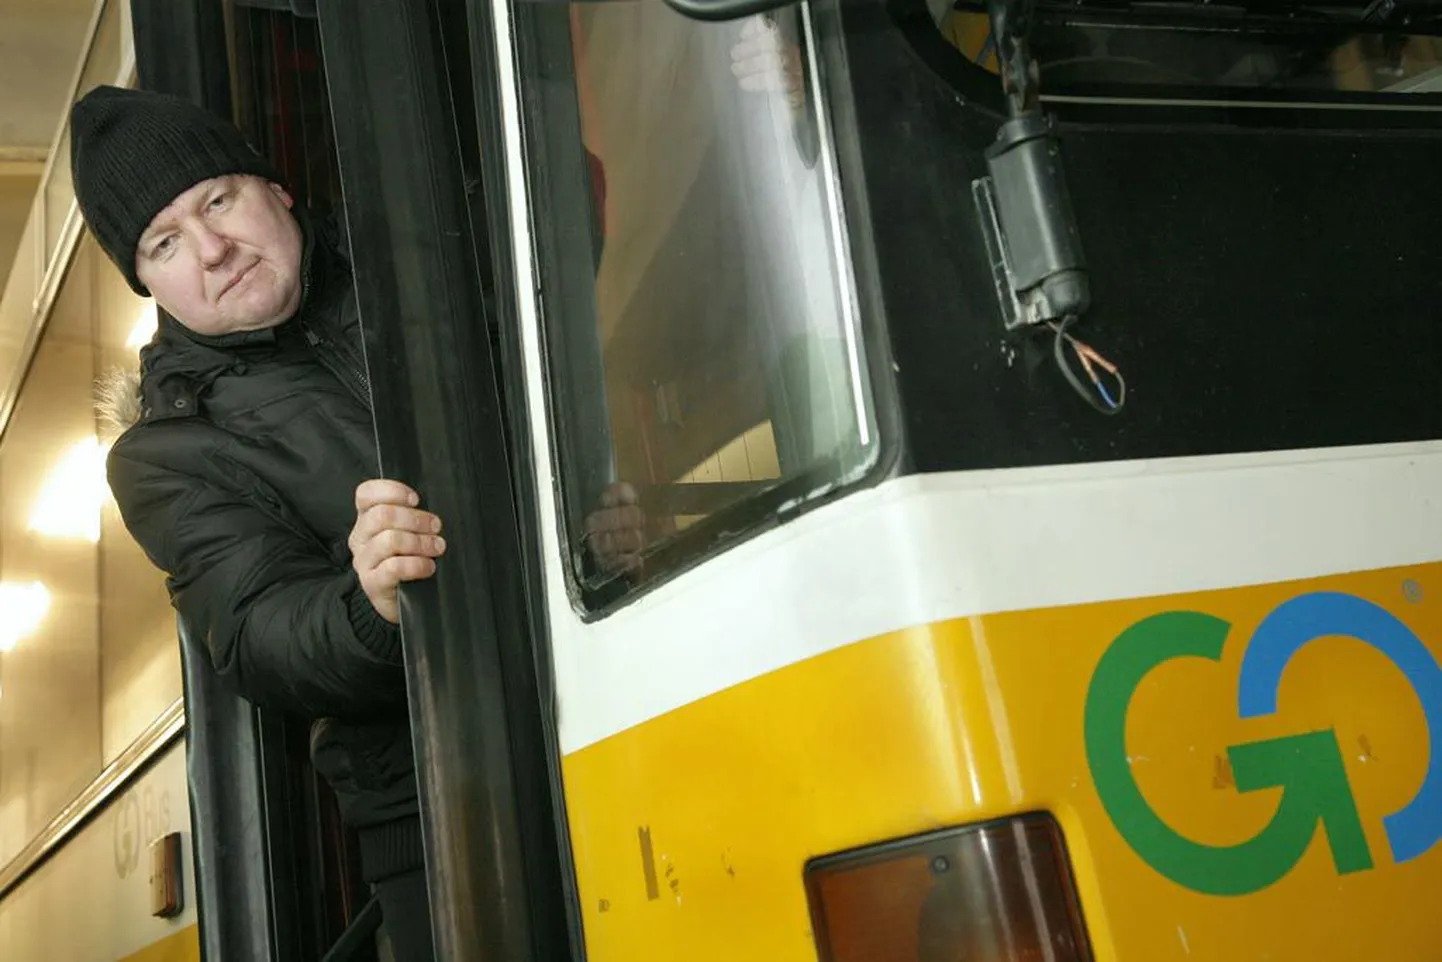 GoBus Pärnu juhtkond tunnistas koostöös ametiühingu juhatusega “Aasta tegija 2008” valikul linnavedude parimaks bussijuhiks Kuido Possuli, kes töötab ettevõttes kümnendat aastat.